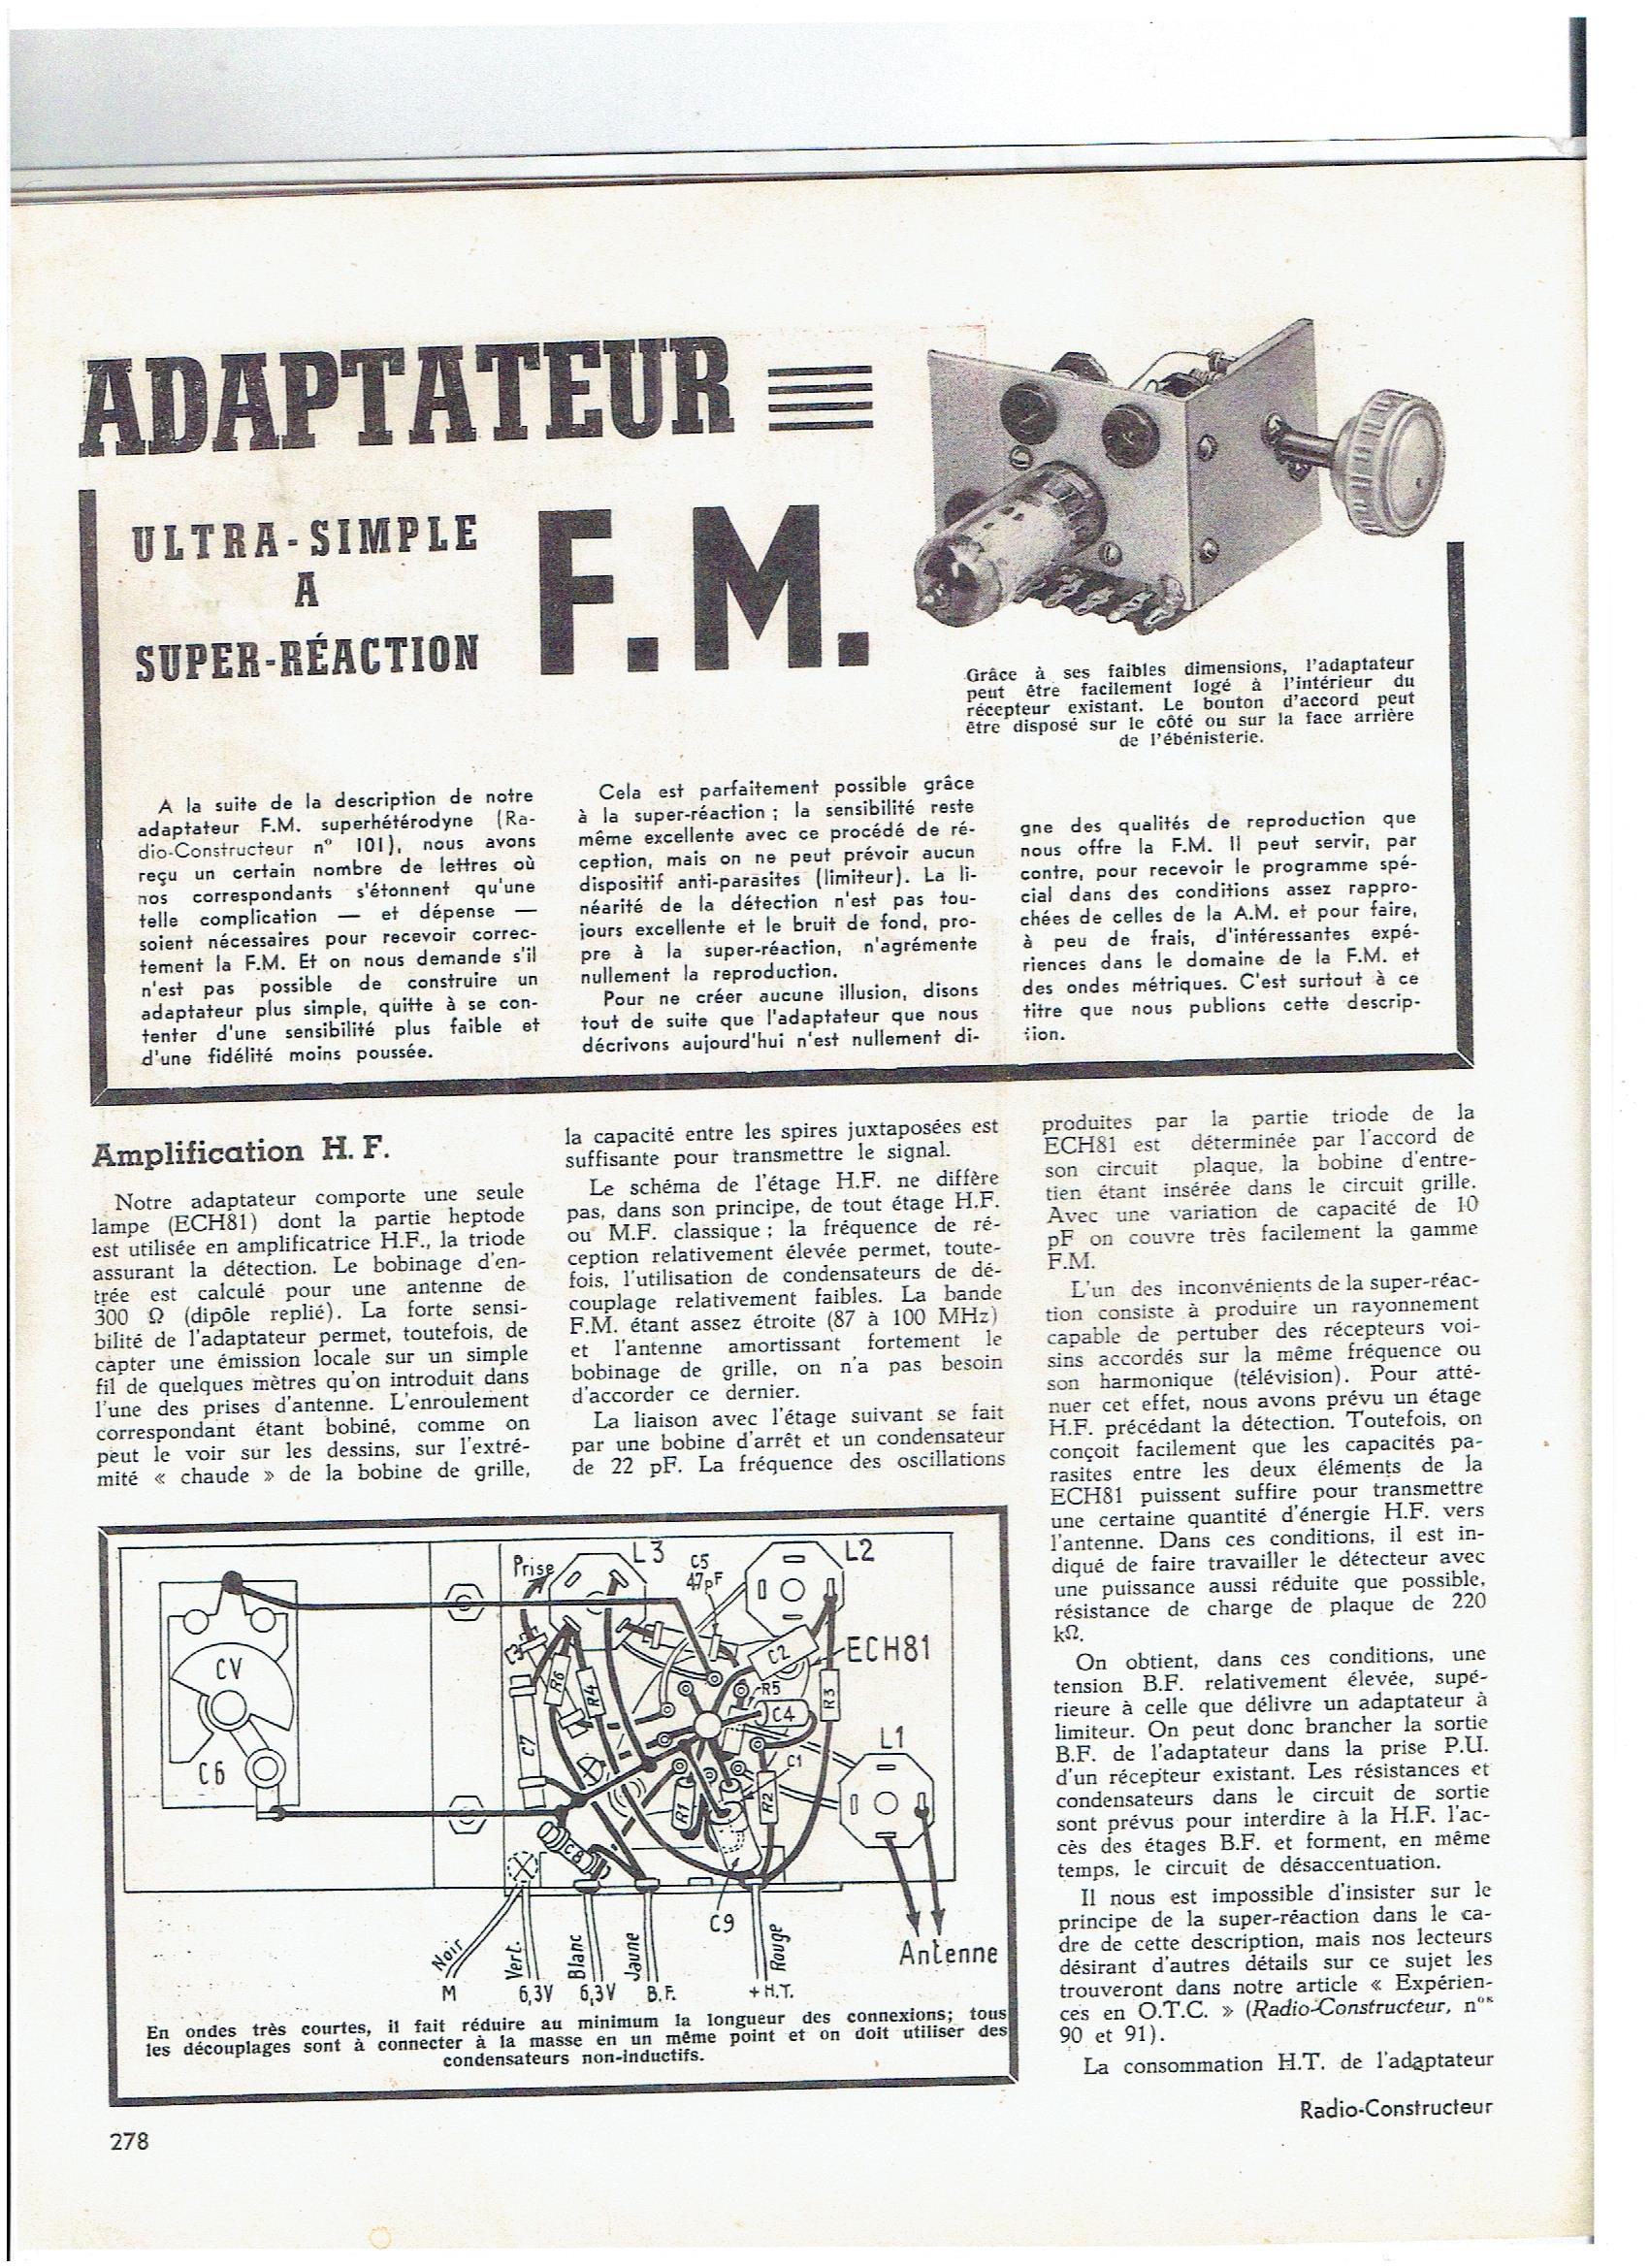 Adaptateur FM-Ech81- super-réaction-1.jpg